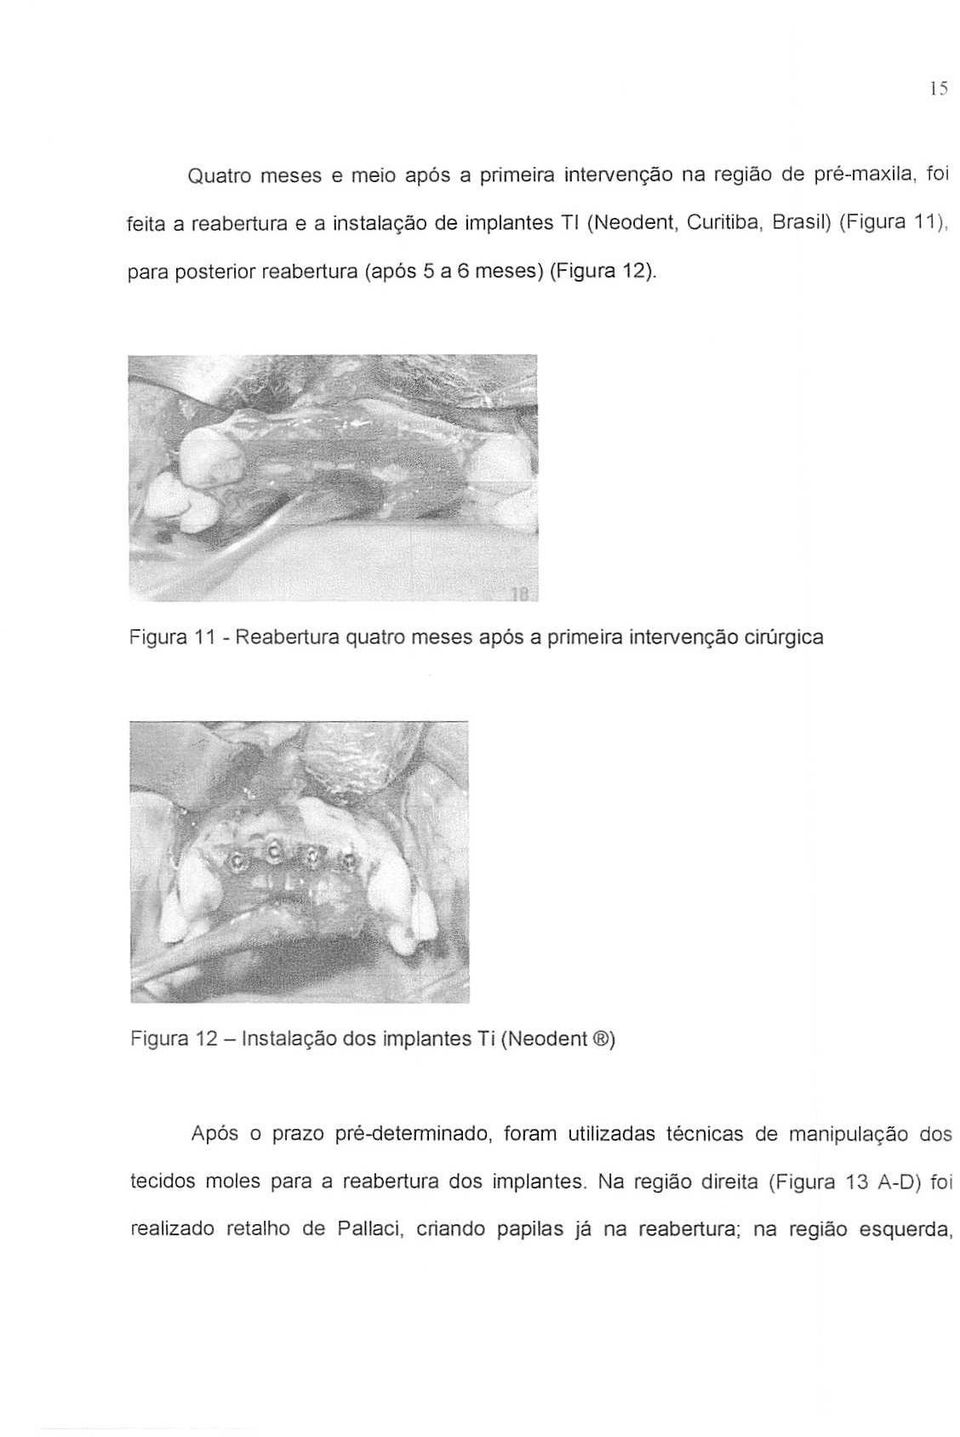 Figura 11 - Reabertura quatro meses ap6s a prime ira intervenc;ao cirurgica Figura 12 -Instalac;ao dos implantes Ti (Neodent ) Ap6s a prazo